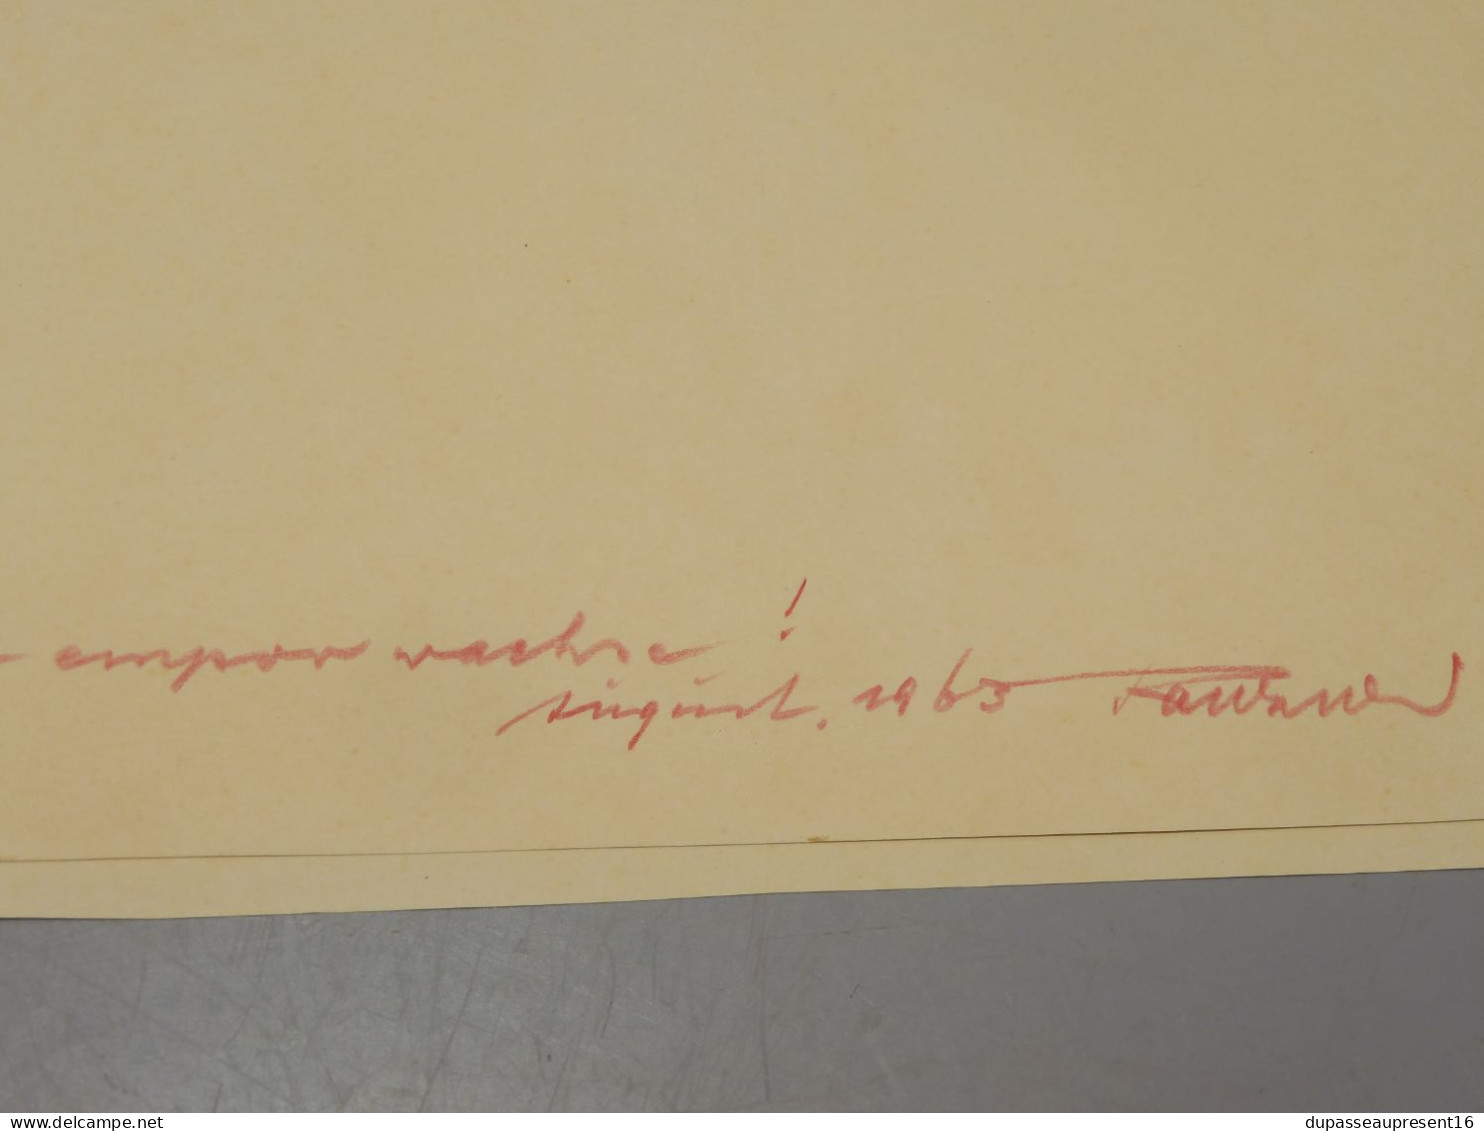 -DESSIN CRAYON PASTELS 1963 signé au crayon sur MARQUISE RANKNE? POST CUBISME   E